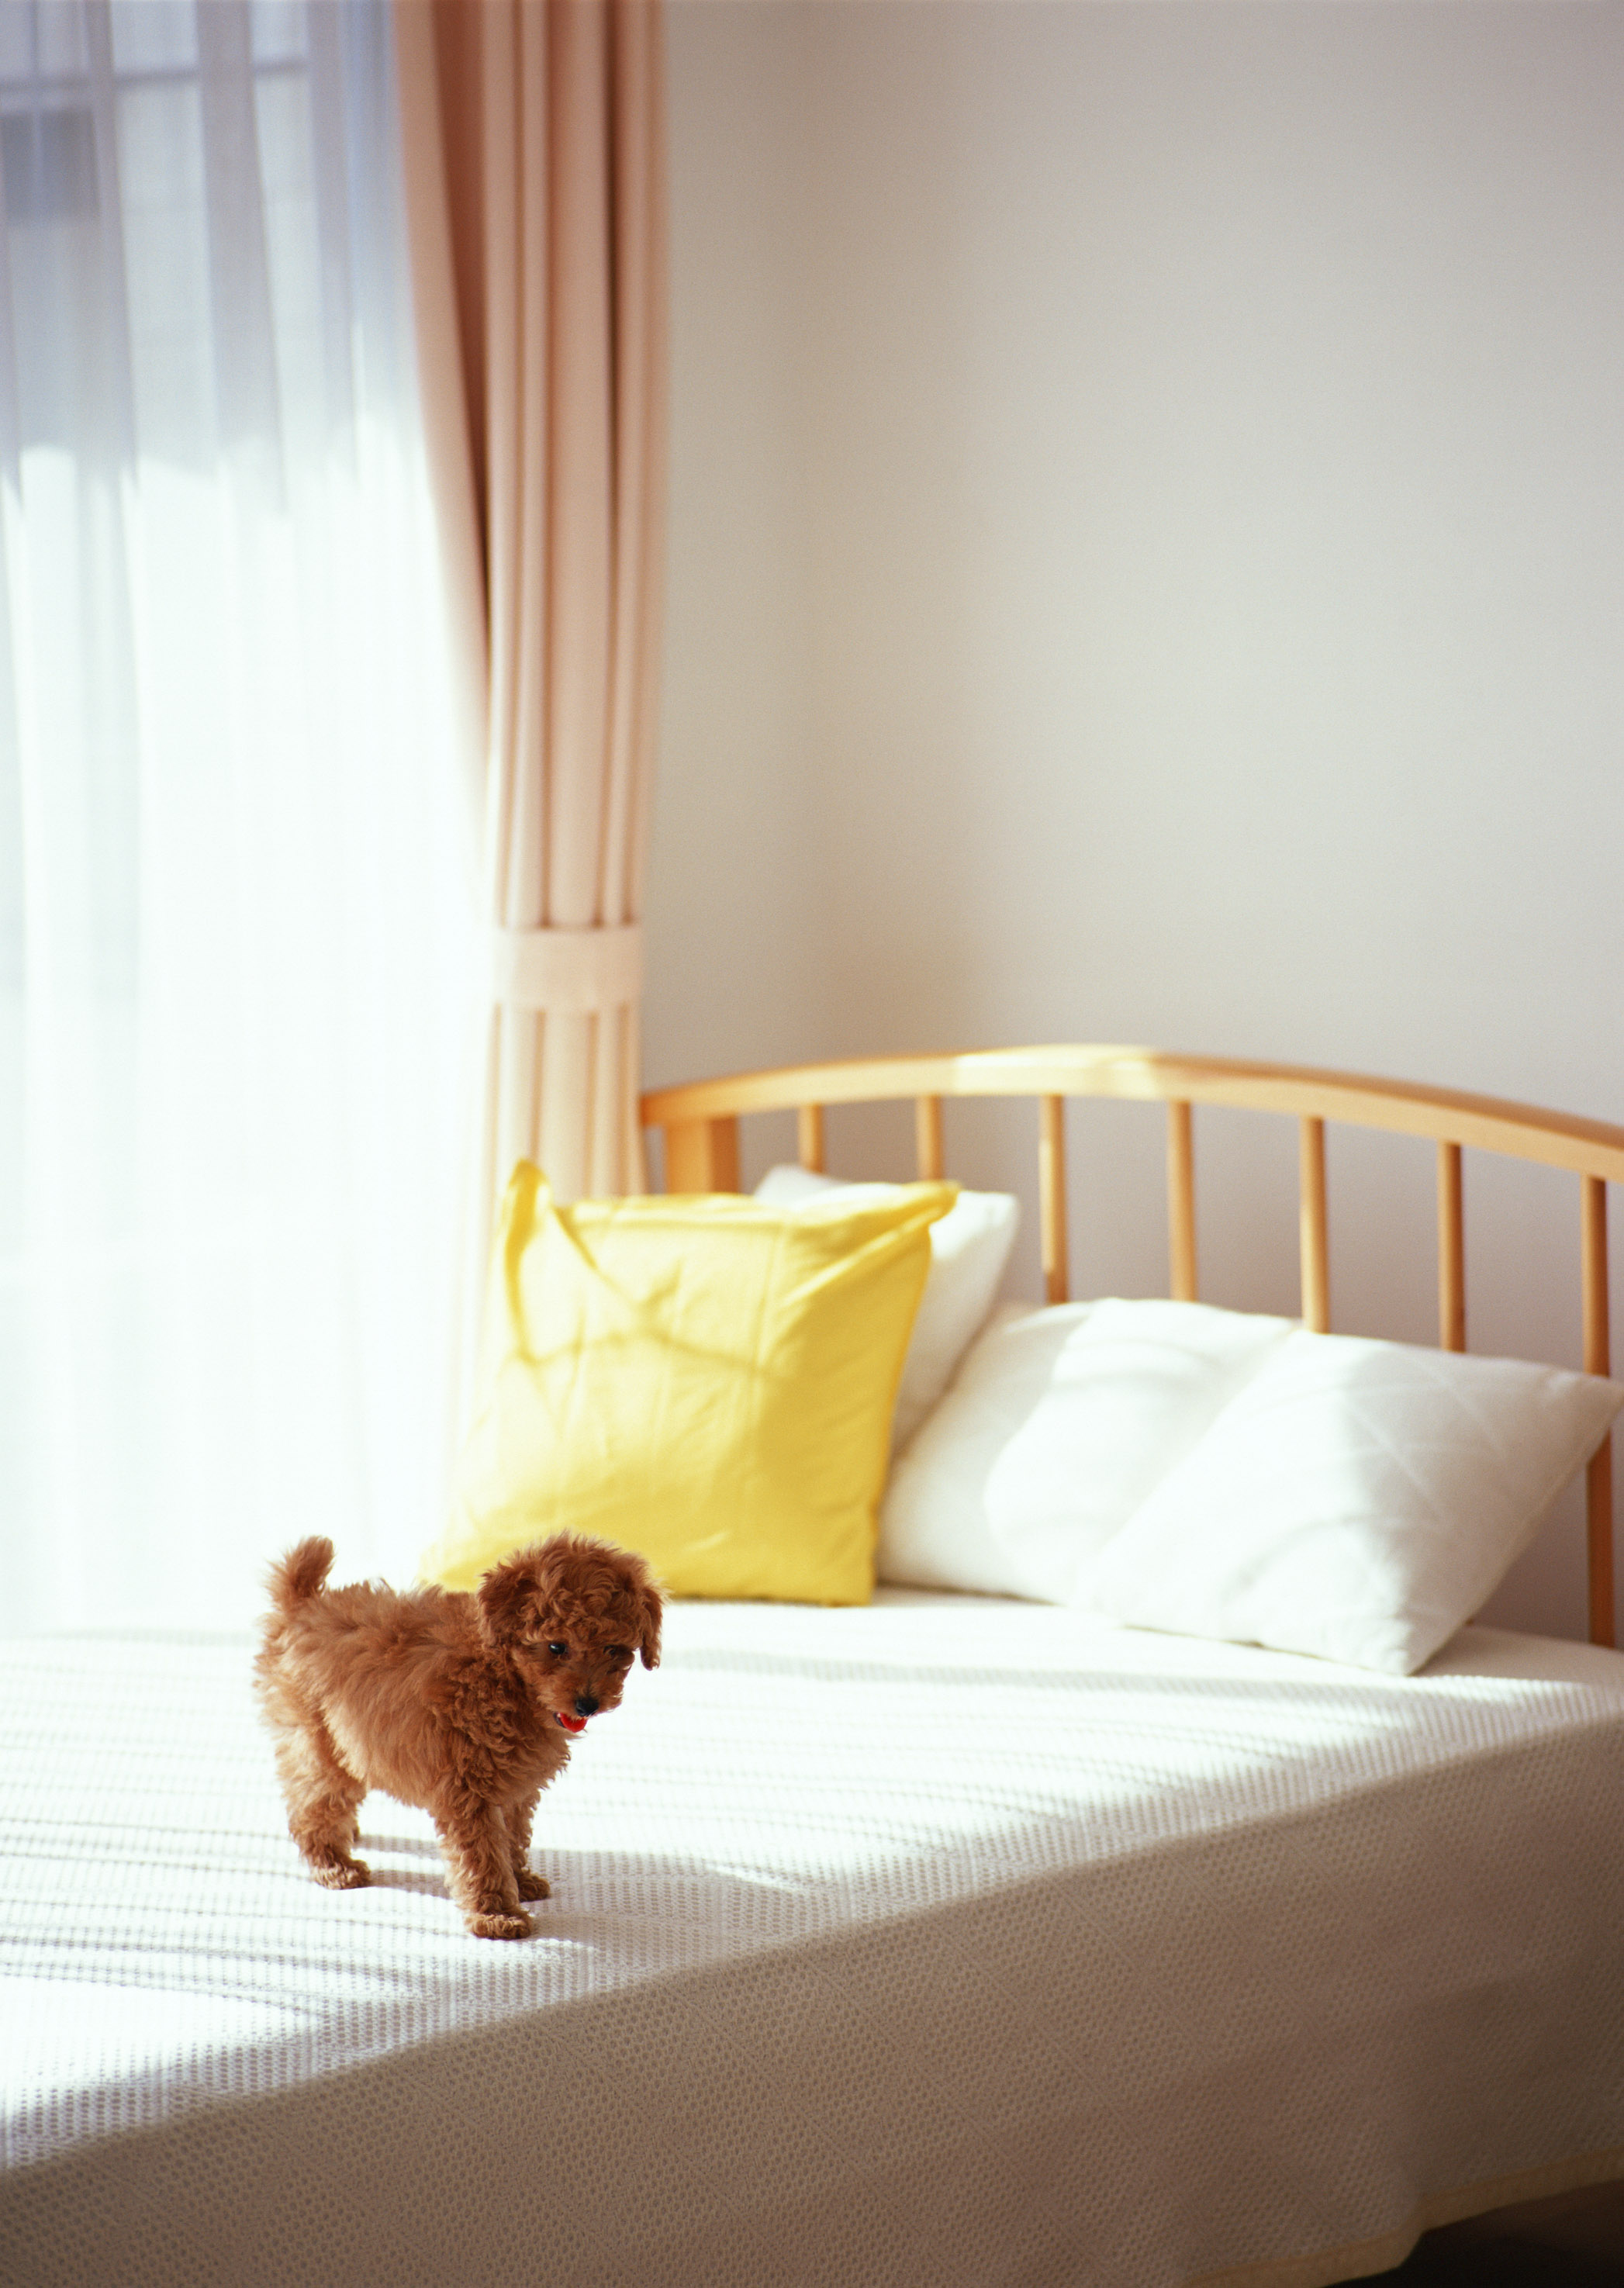 animals, beds, dogs, pillows - desktop wallpaper